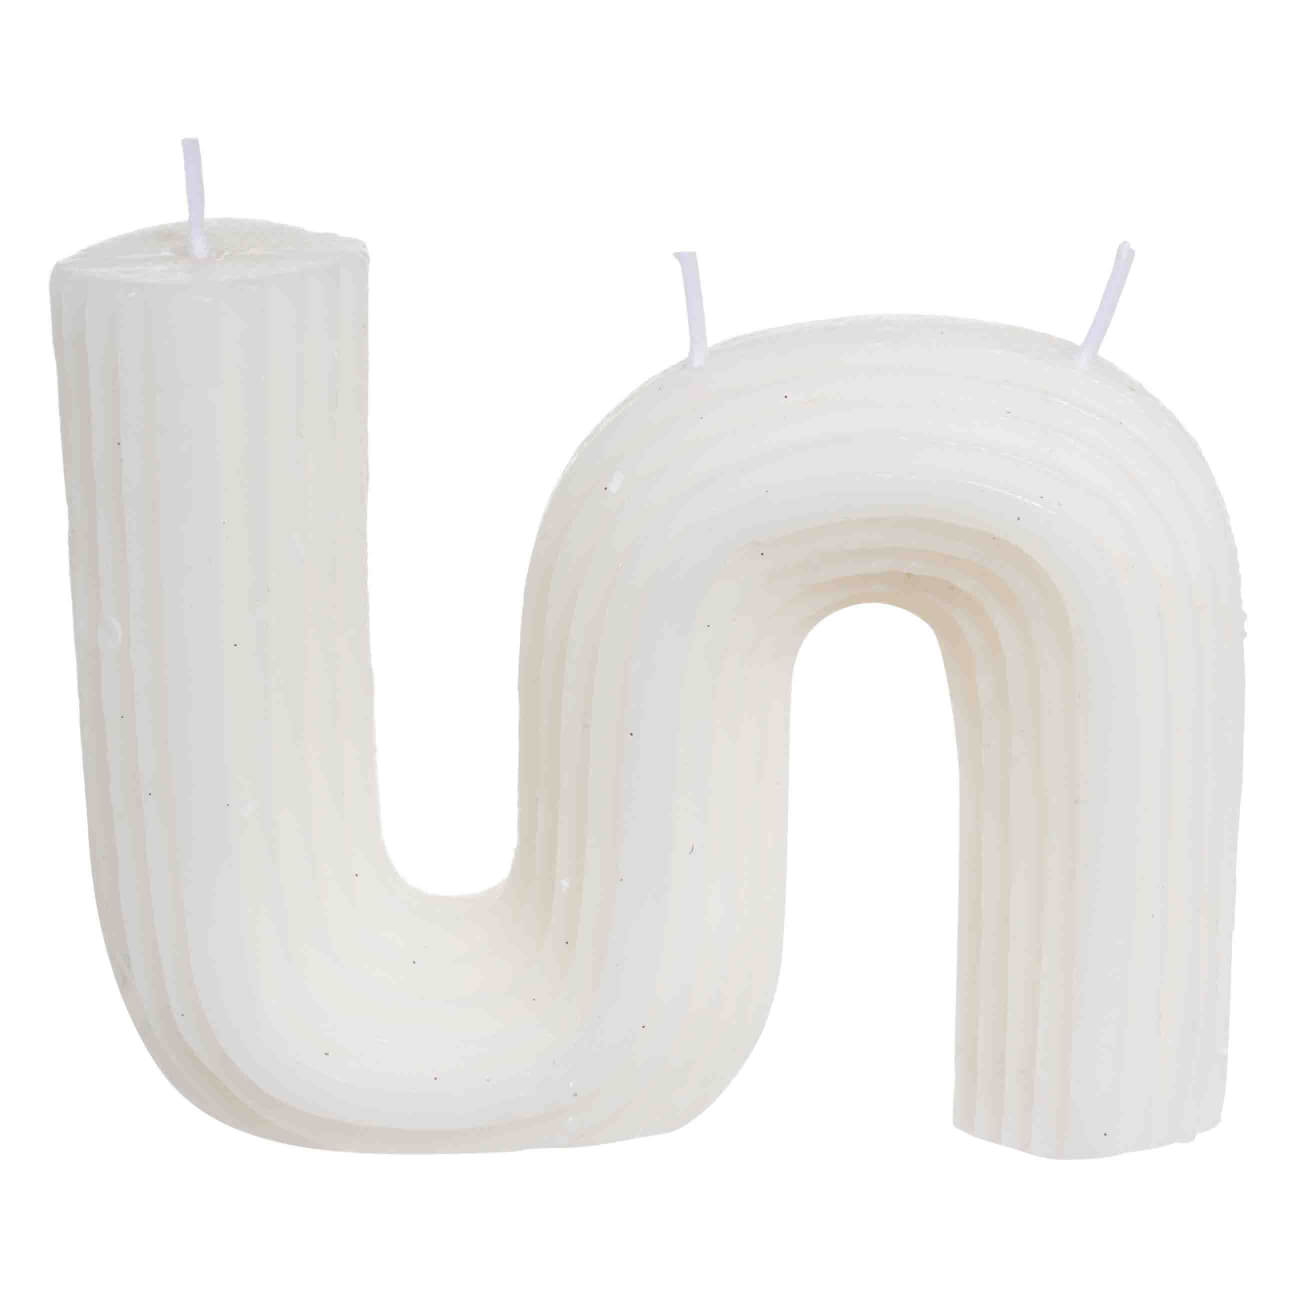 Свеча, 9 см, рифленая, белая, Зигзаг, Ribbed candle свеча античная 2 2х 25 см белая